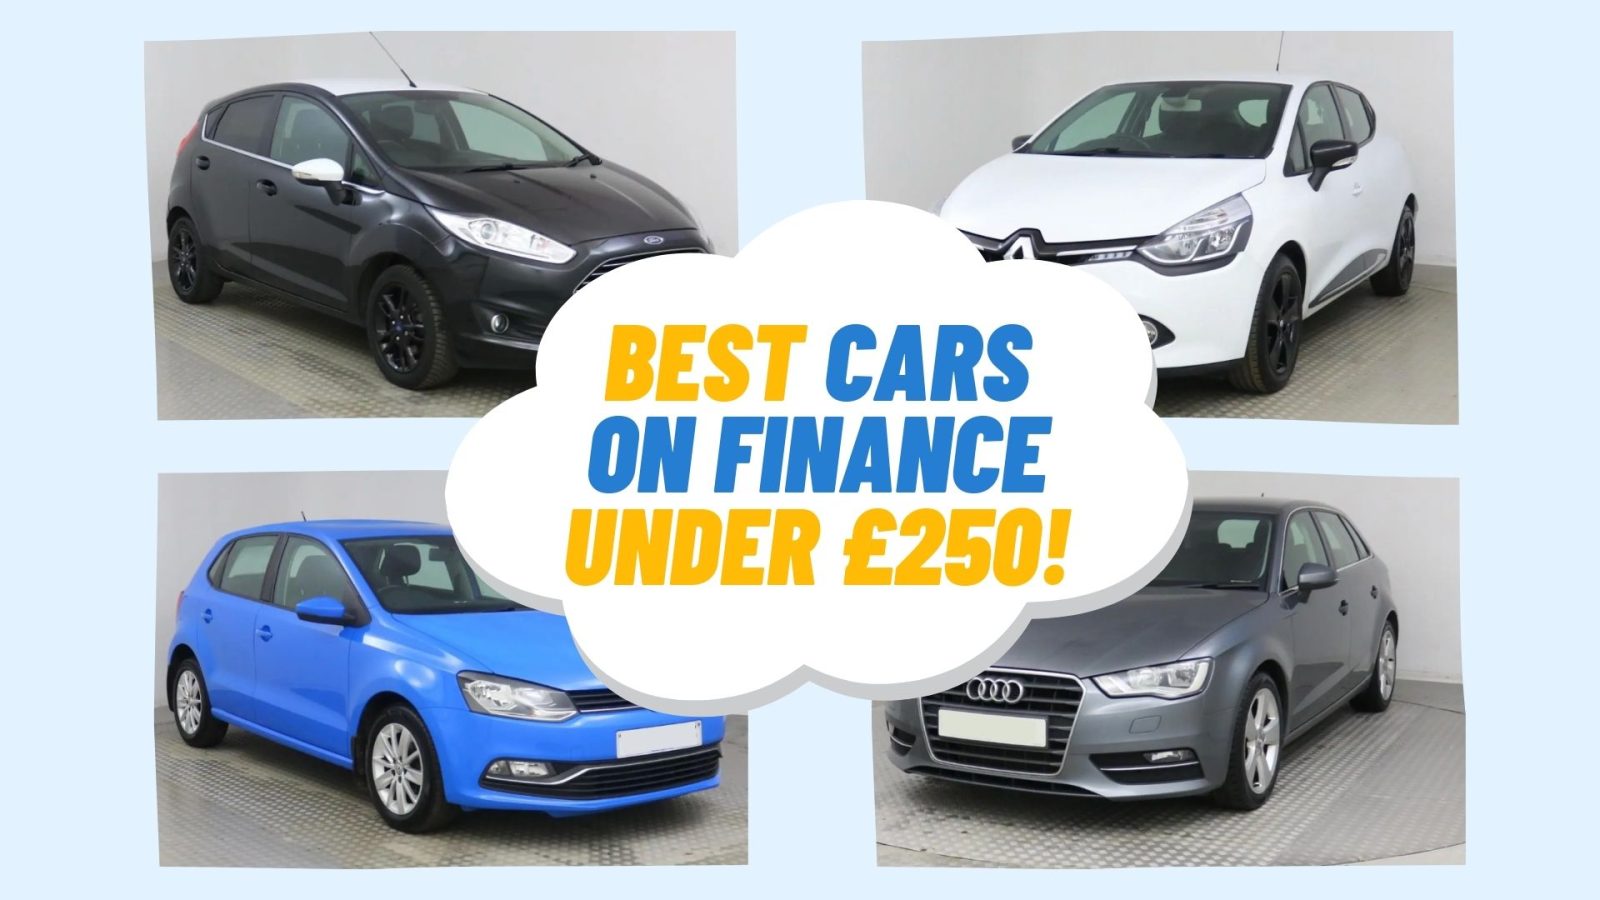 Best cars on finance under £250